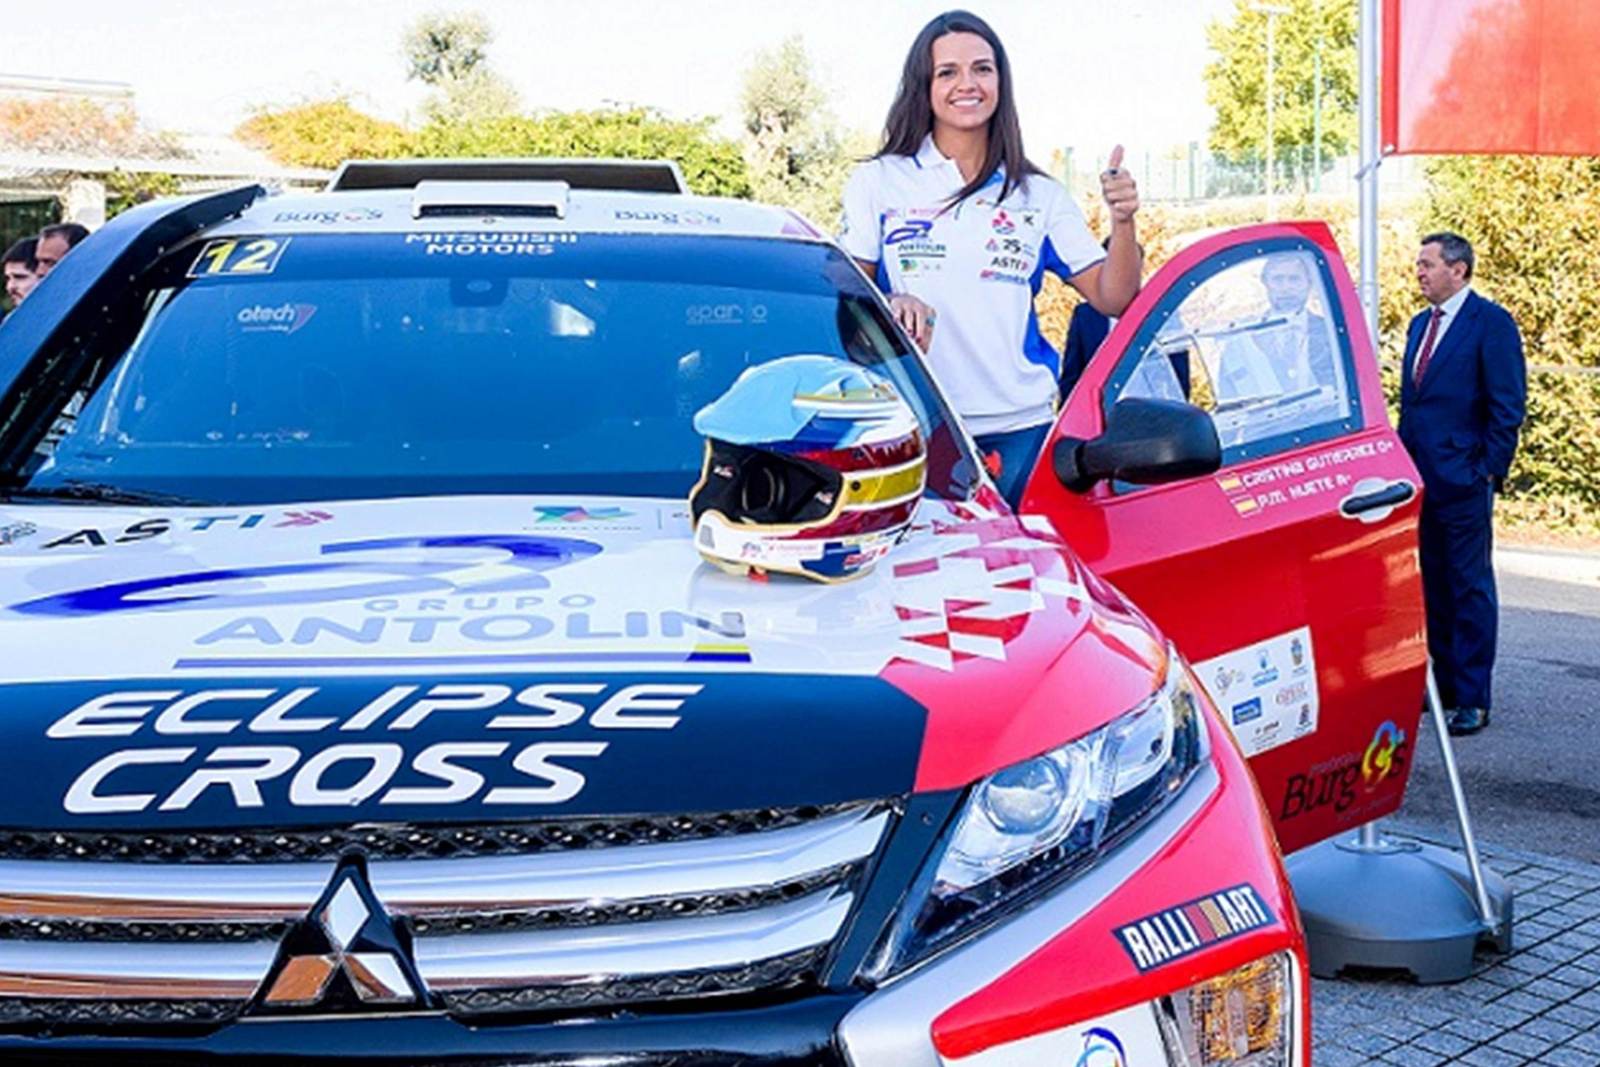 De 26-jarige Spaanse rallyheld Cristina Gutierrez, die met haar Eclipse Cross silhouet racer (T1 proto) 